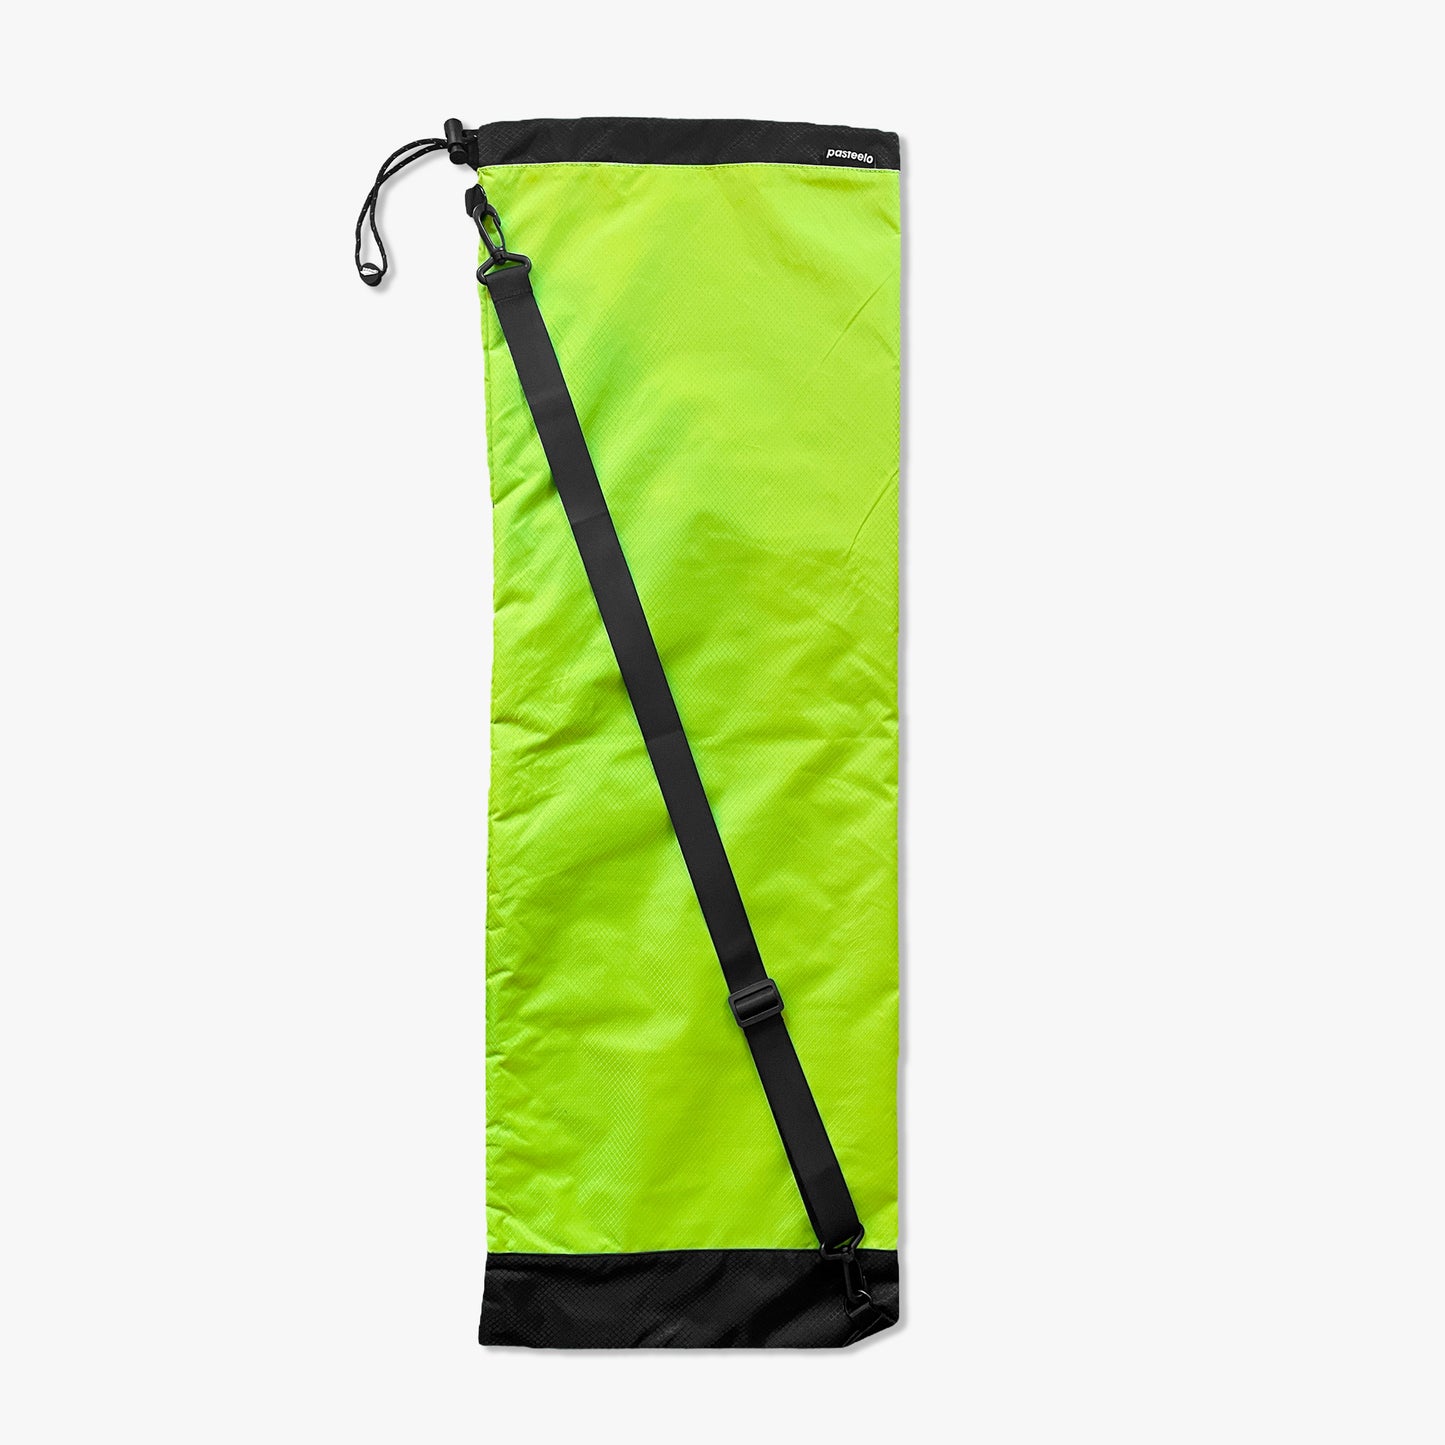 SKATEBOARD BAG - SAFETY GREEN/BLACK